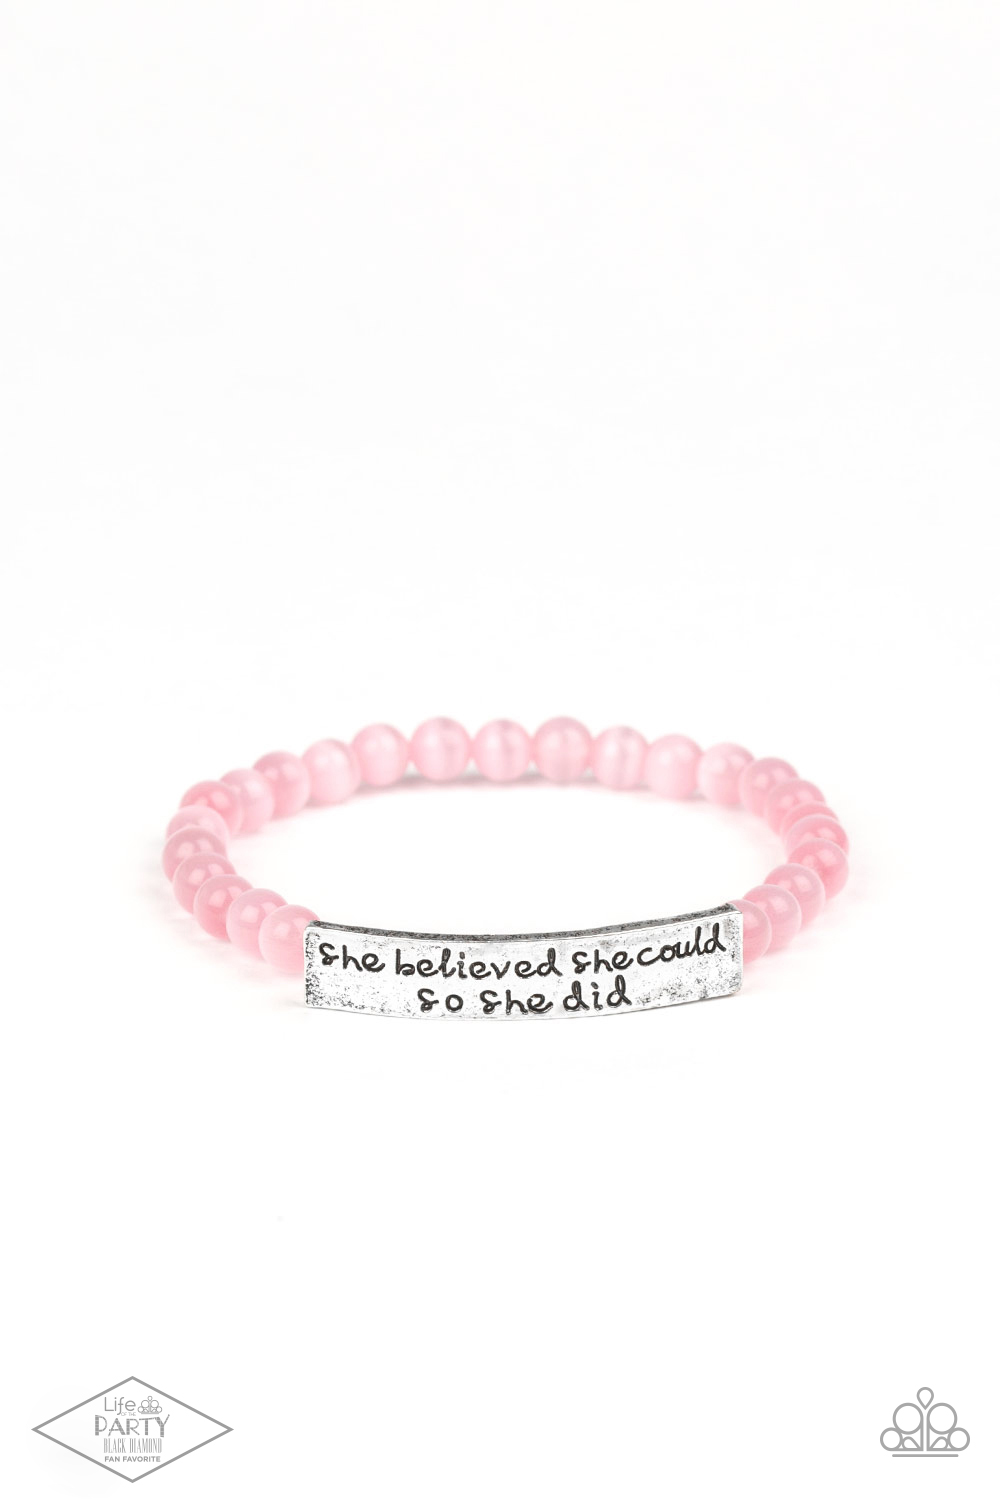 Bracelet - So She Did - Pink